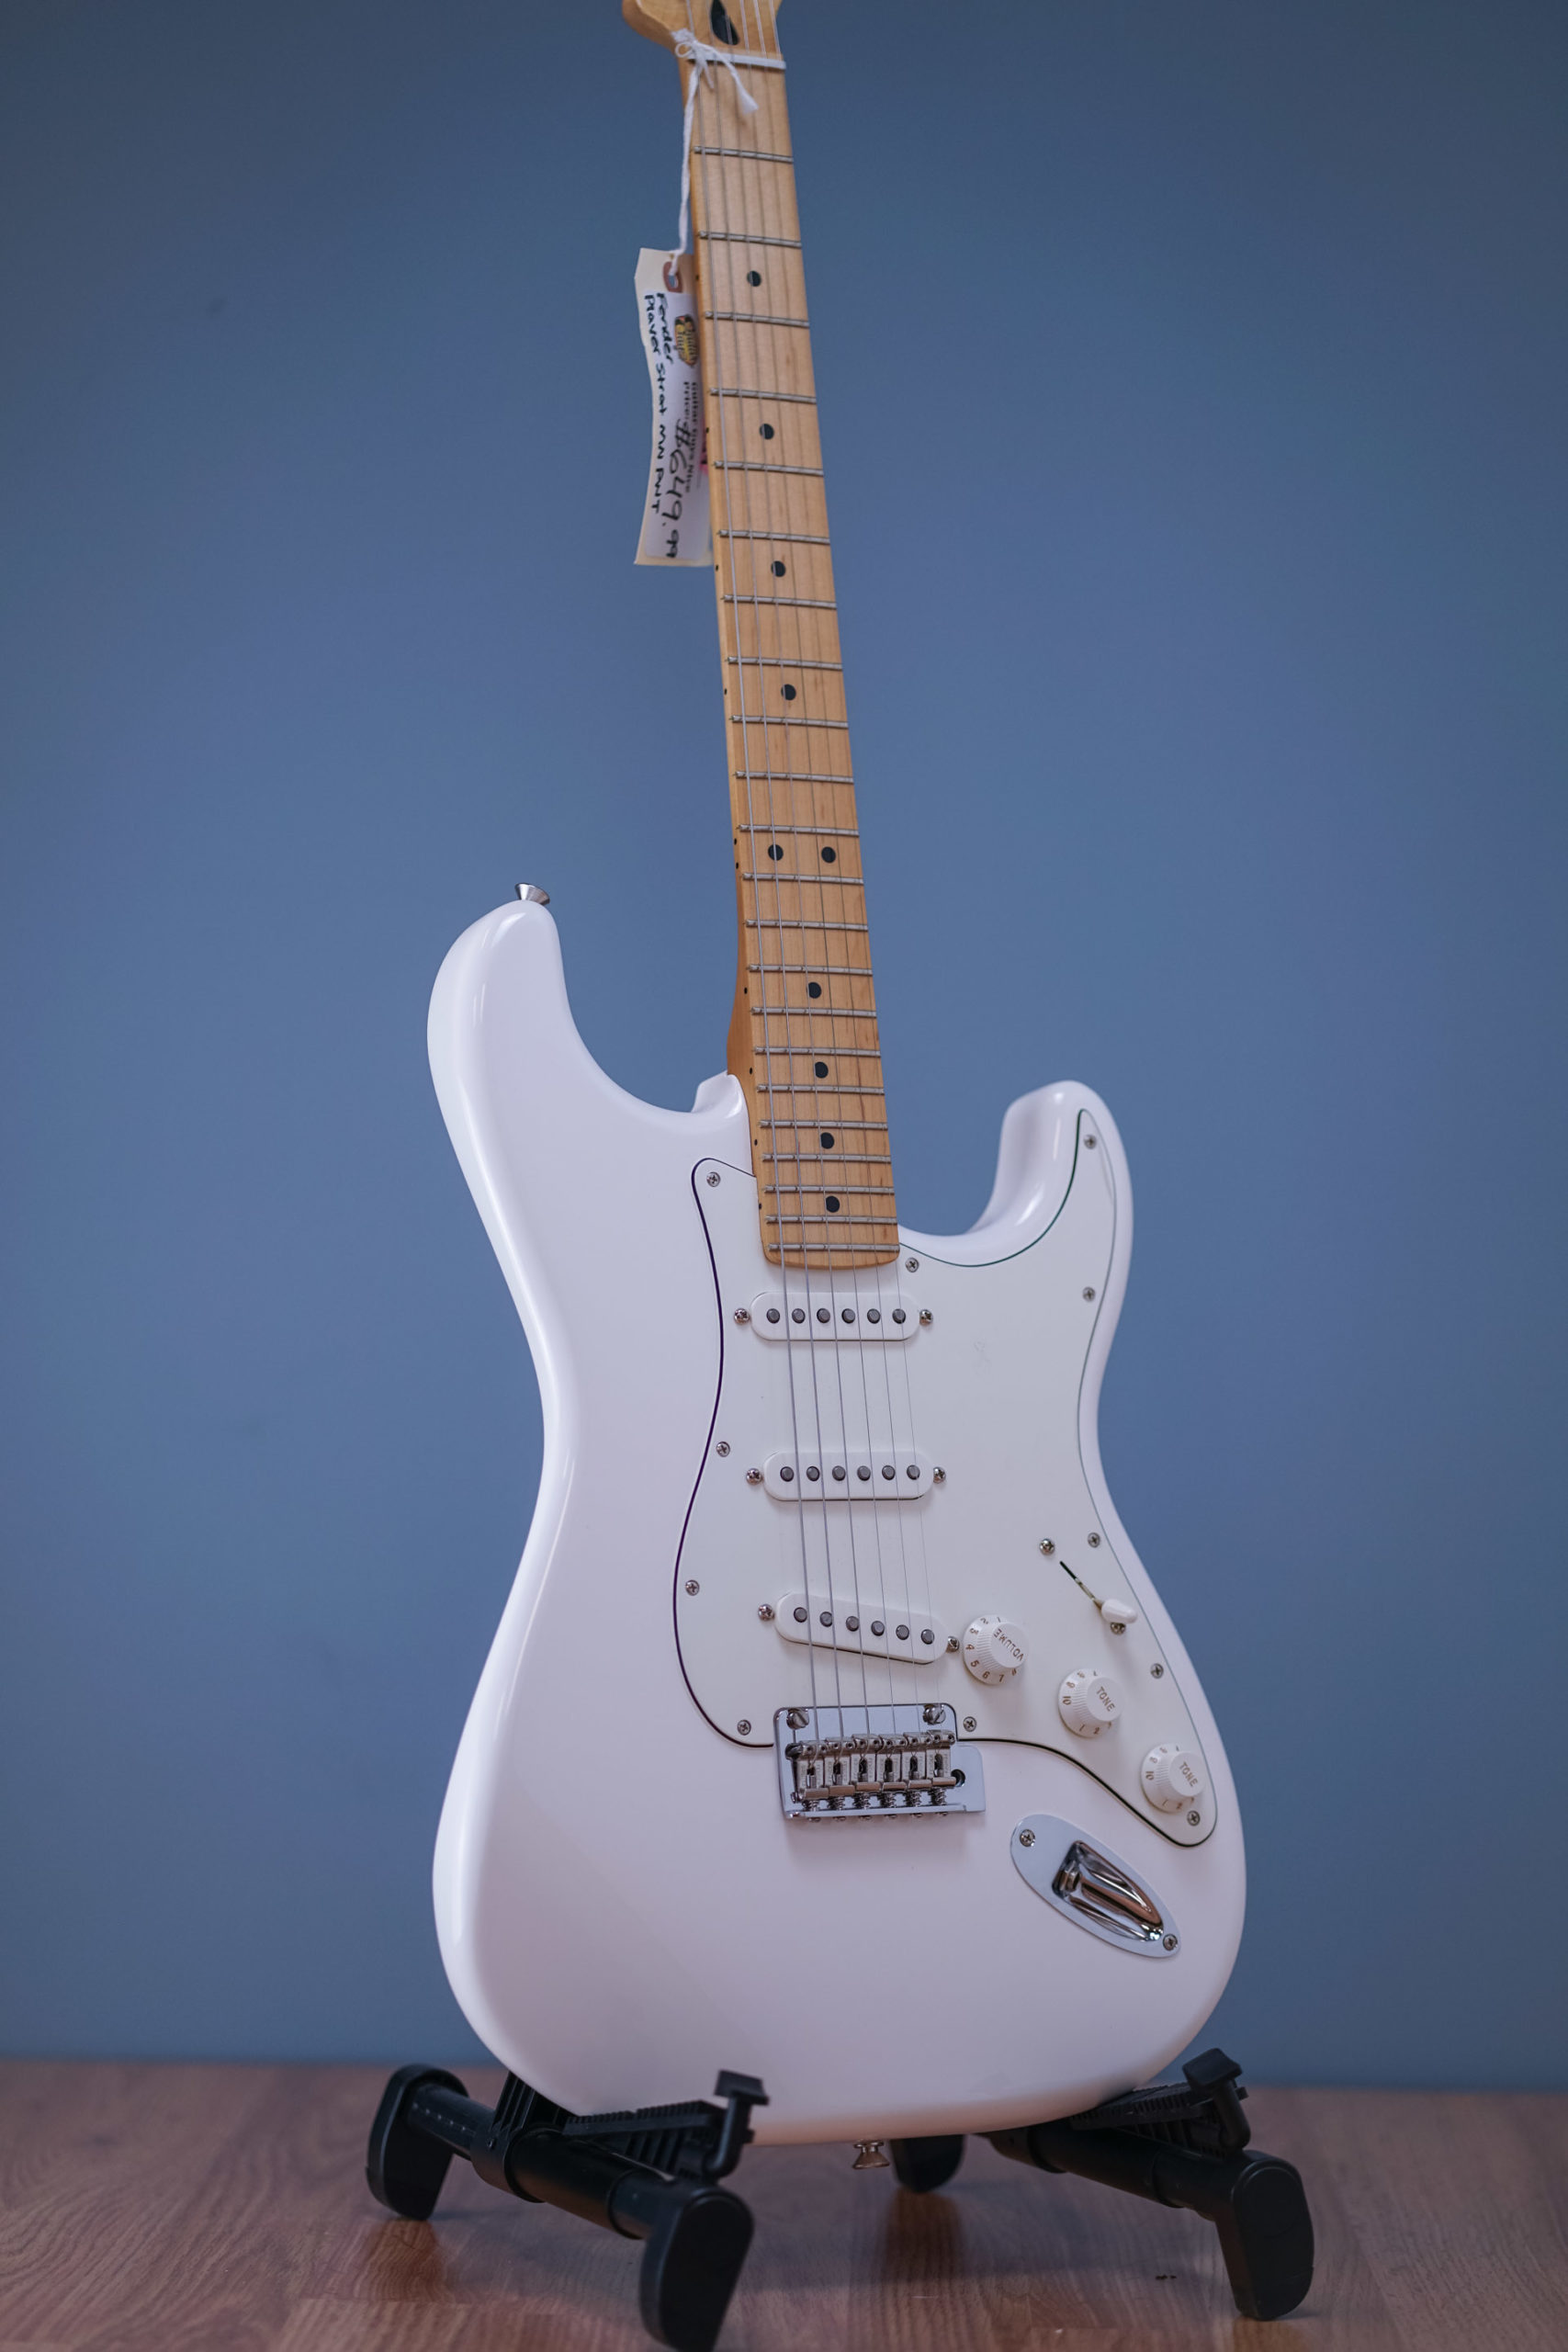 Fender Player Strat MN White